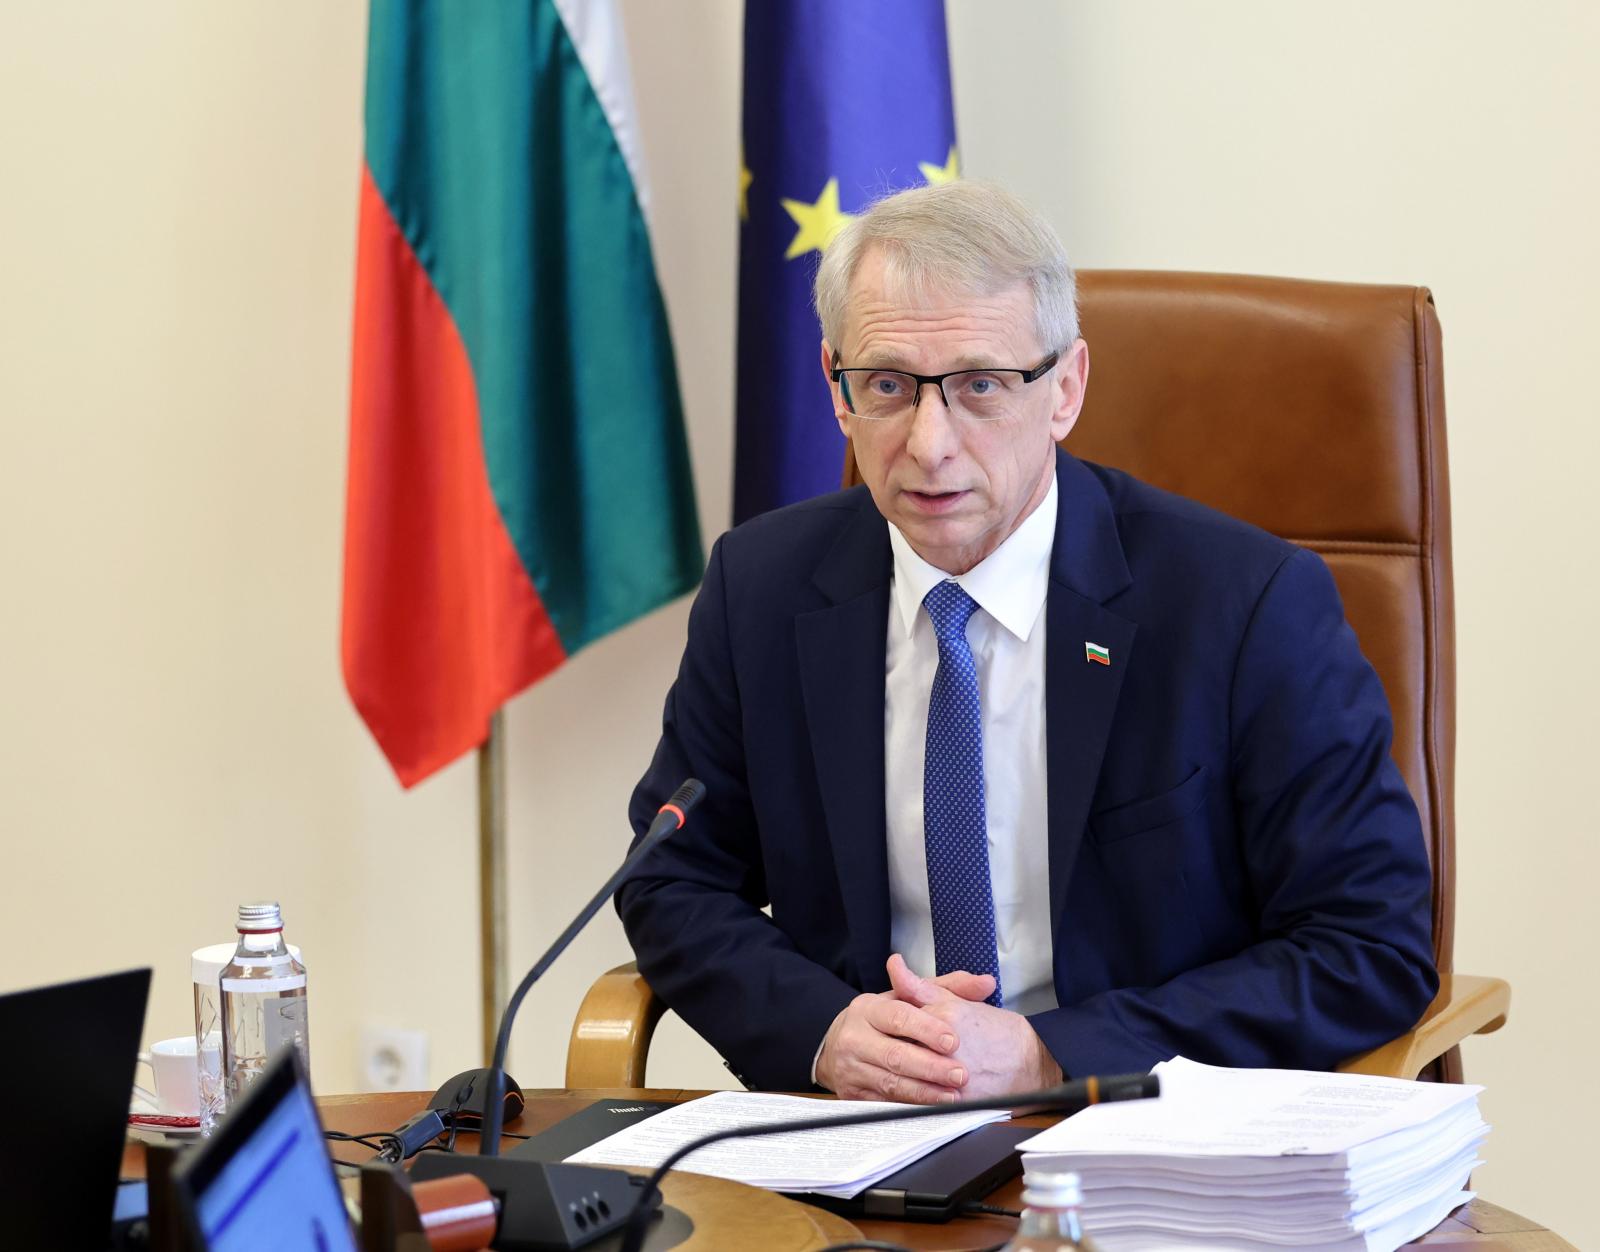 Bulgaristan Başbakanı Denkov: Hükümet net bir görevle kuruldu, iktidarı ve kurumları, yolsuzluk yükünden kurtarmak